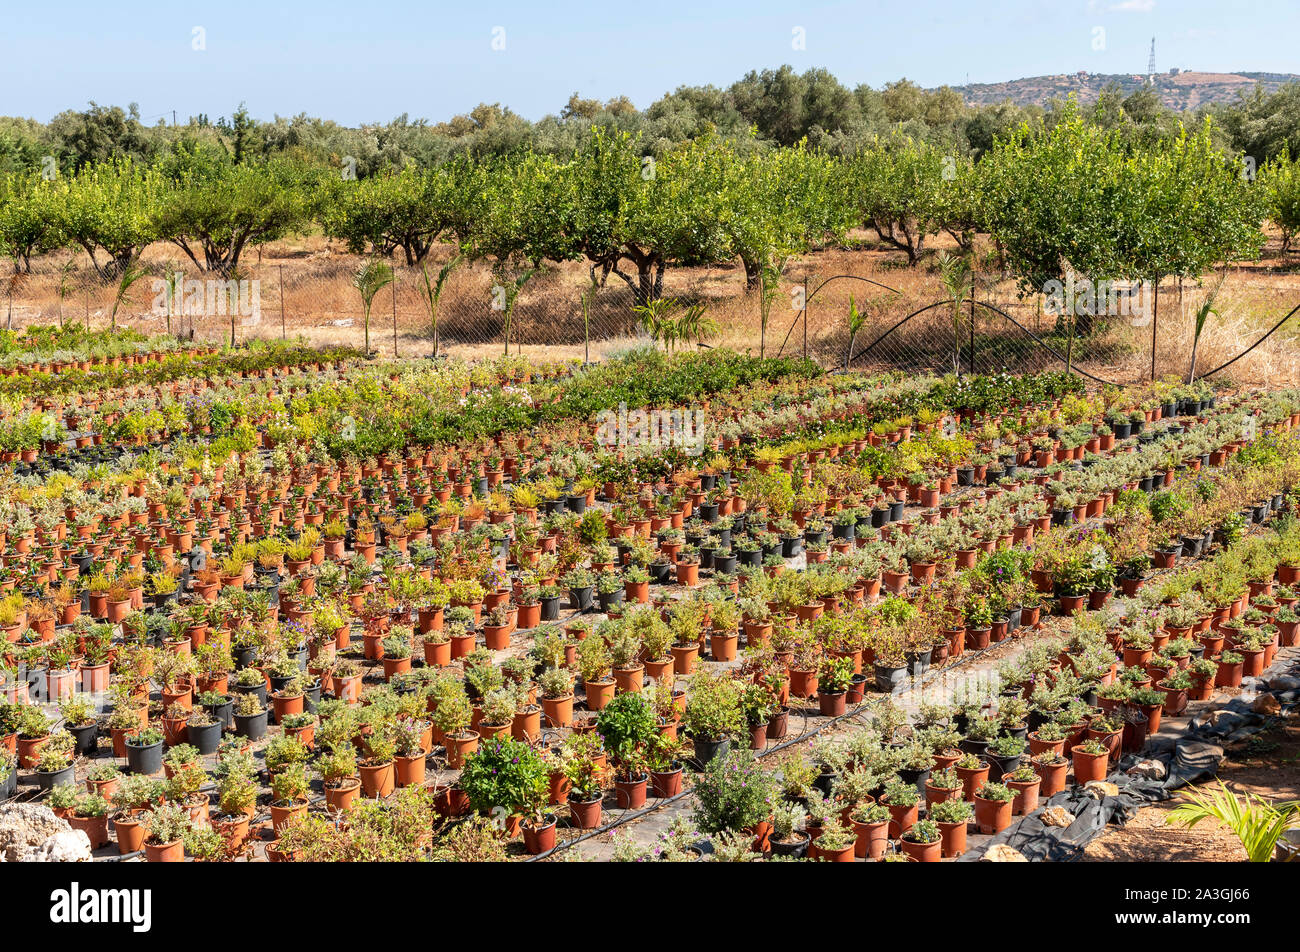 Malia, Kreta, Griechenland. September 2019. Kübelpflanzen draußen wachsen im kommerziellen Maßstab für den Verkauf der Zentren zu Garten. Stockfoto